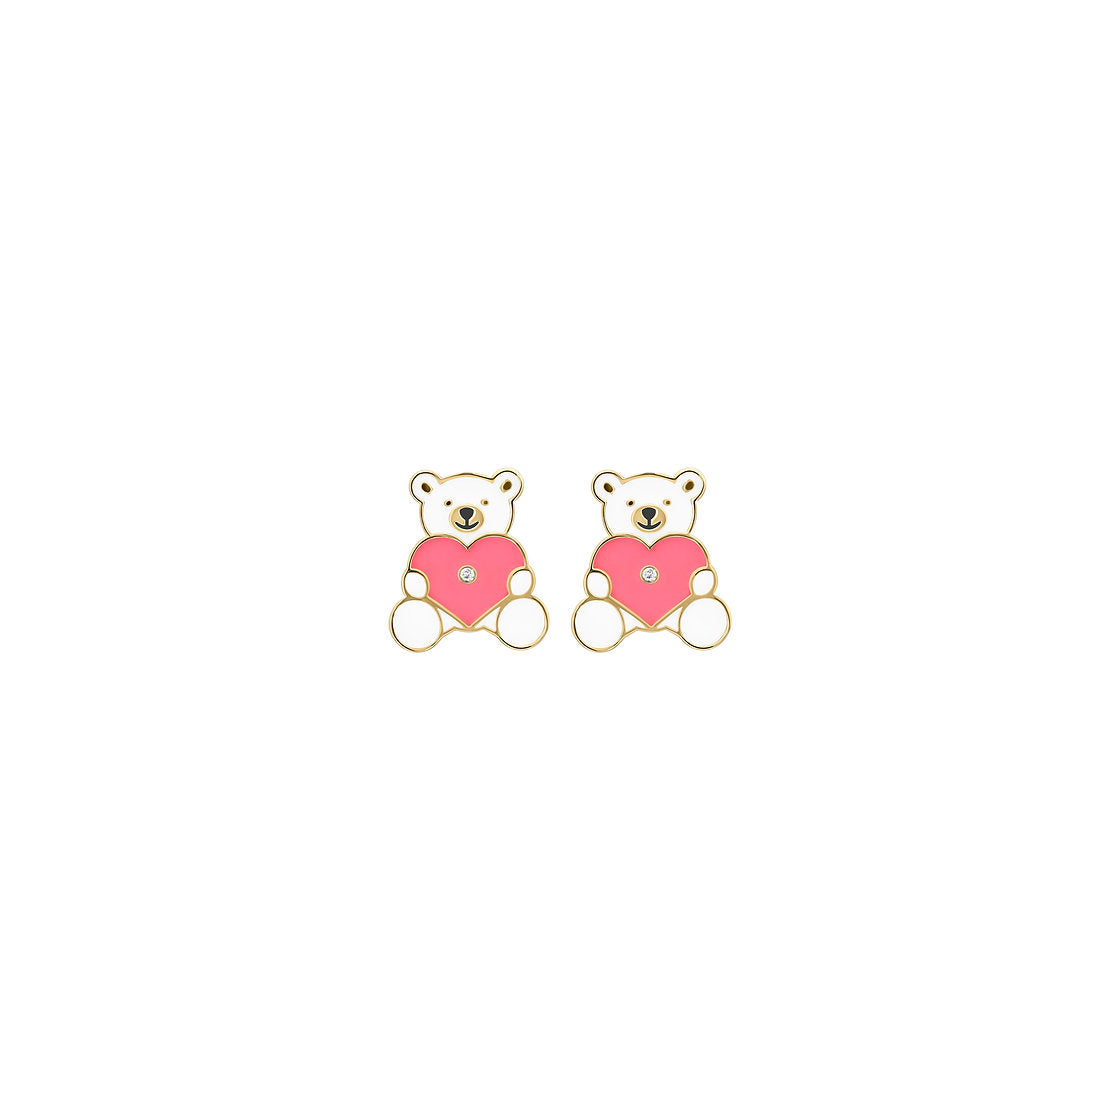 Pink Teddy Bear Kid's Diamond Earrings